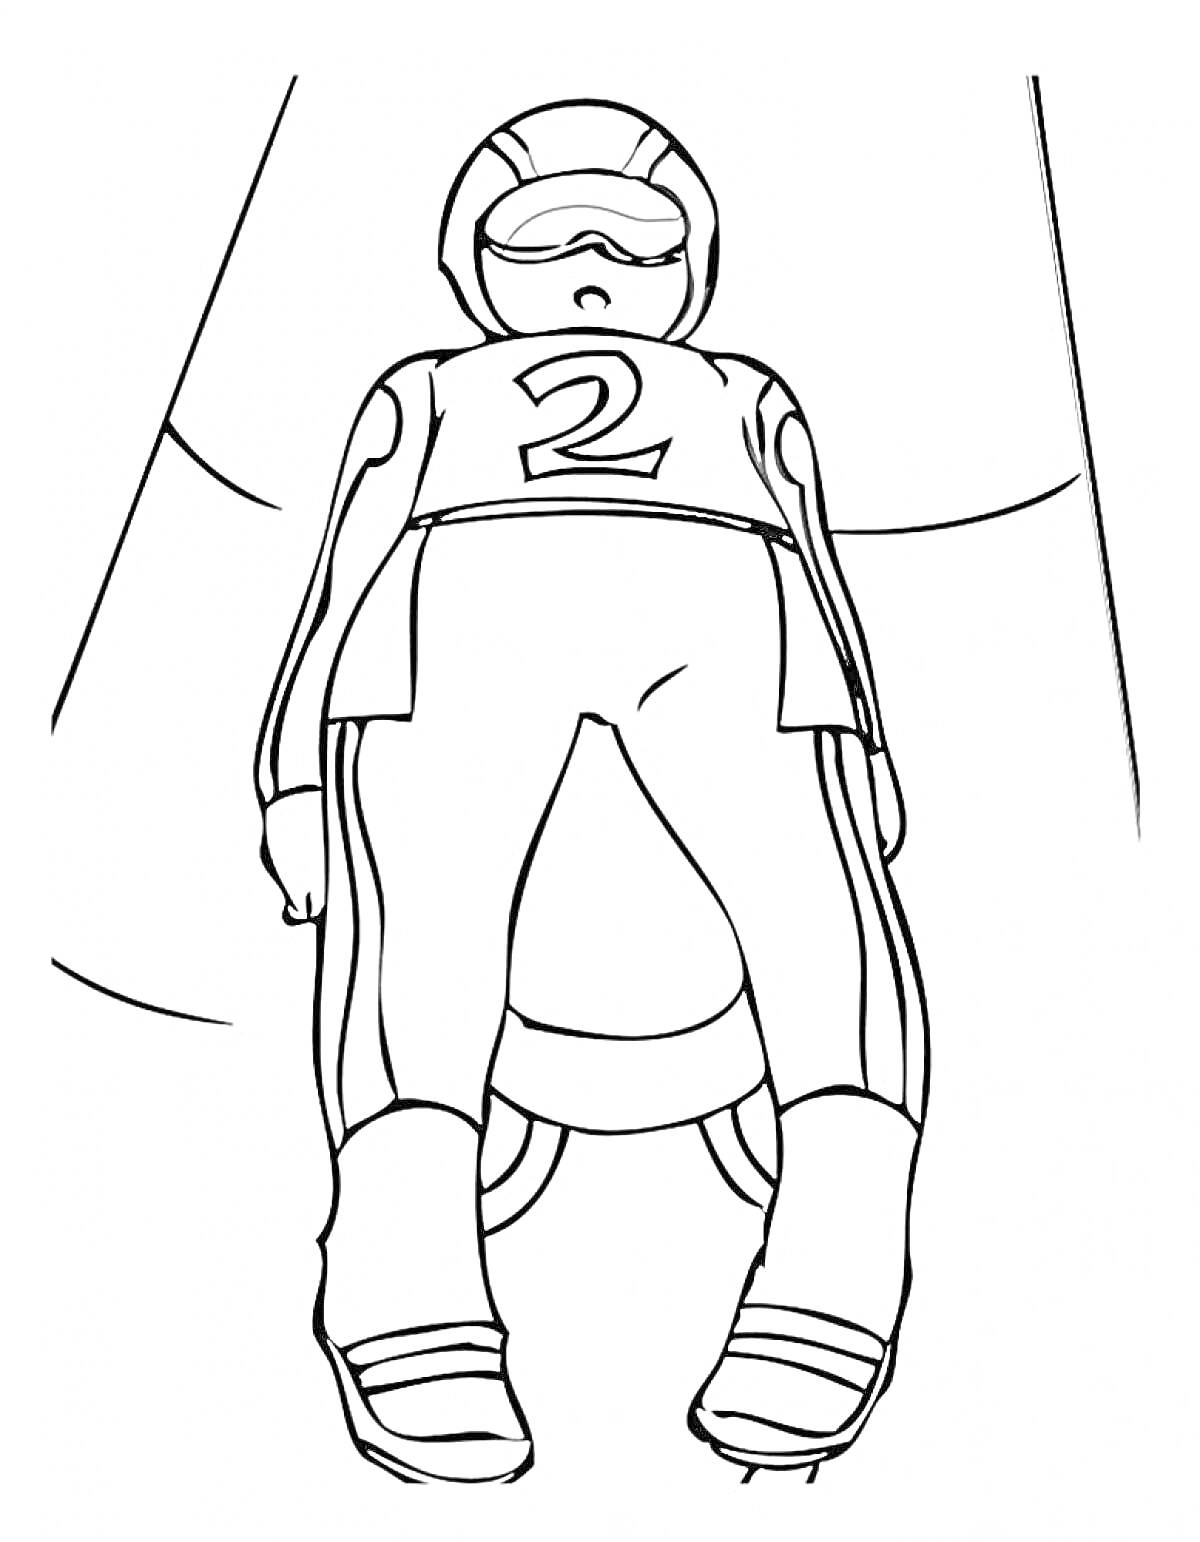 Раскраска Спортсмен на санном спорте, лежащий на санях, с номером 2, в защитном шлеме и спортивном костюме